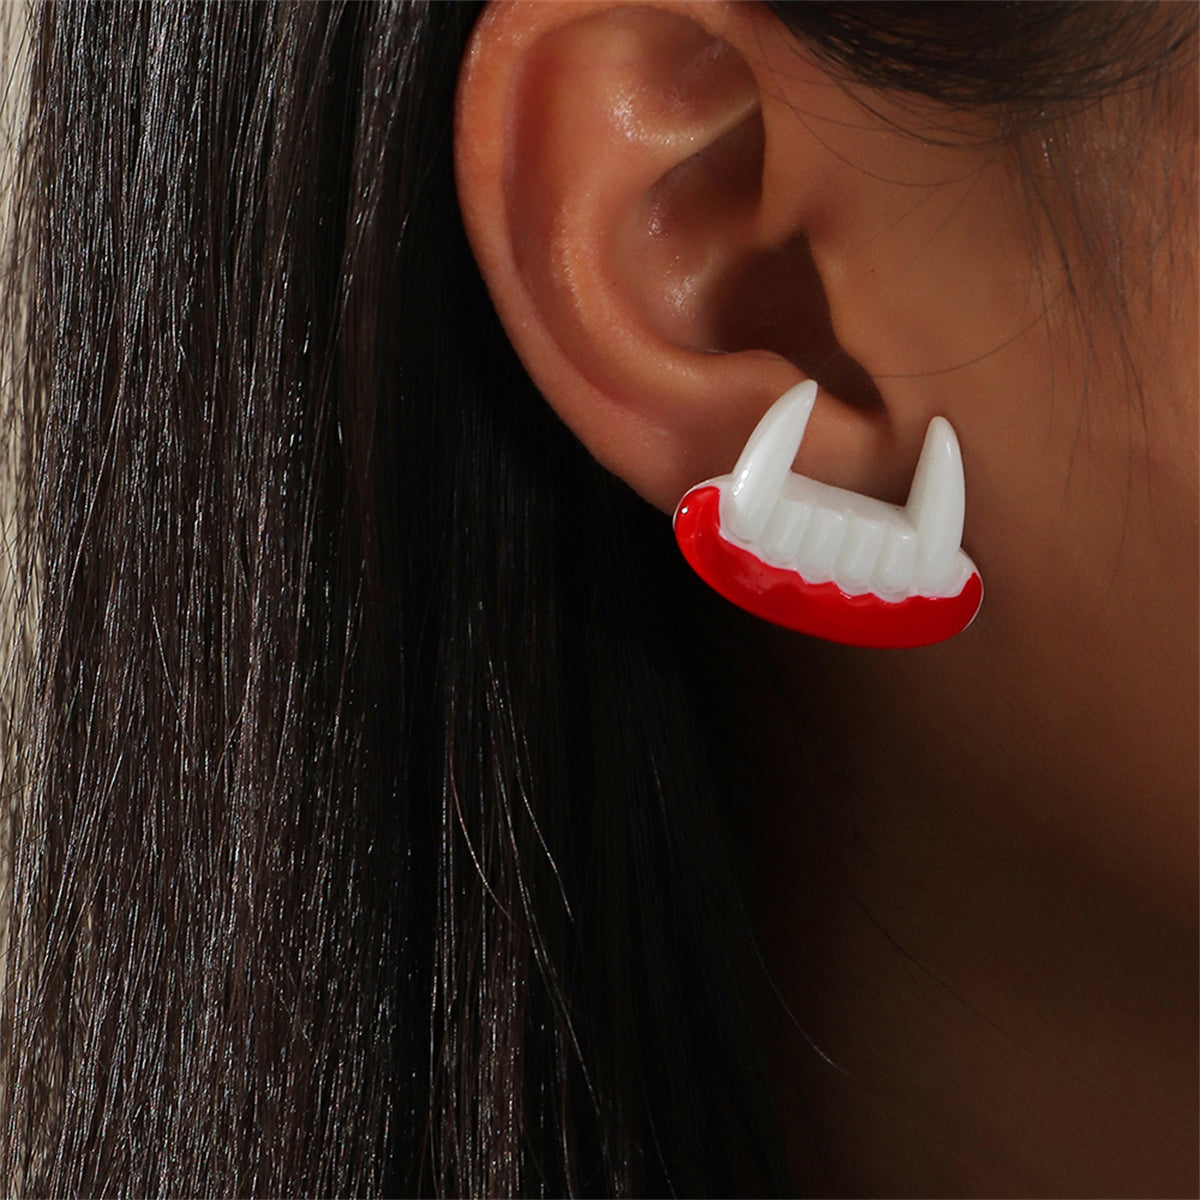 White & Silver-Plated Vampire Teeth Stud Earrings